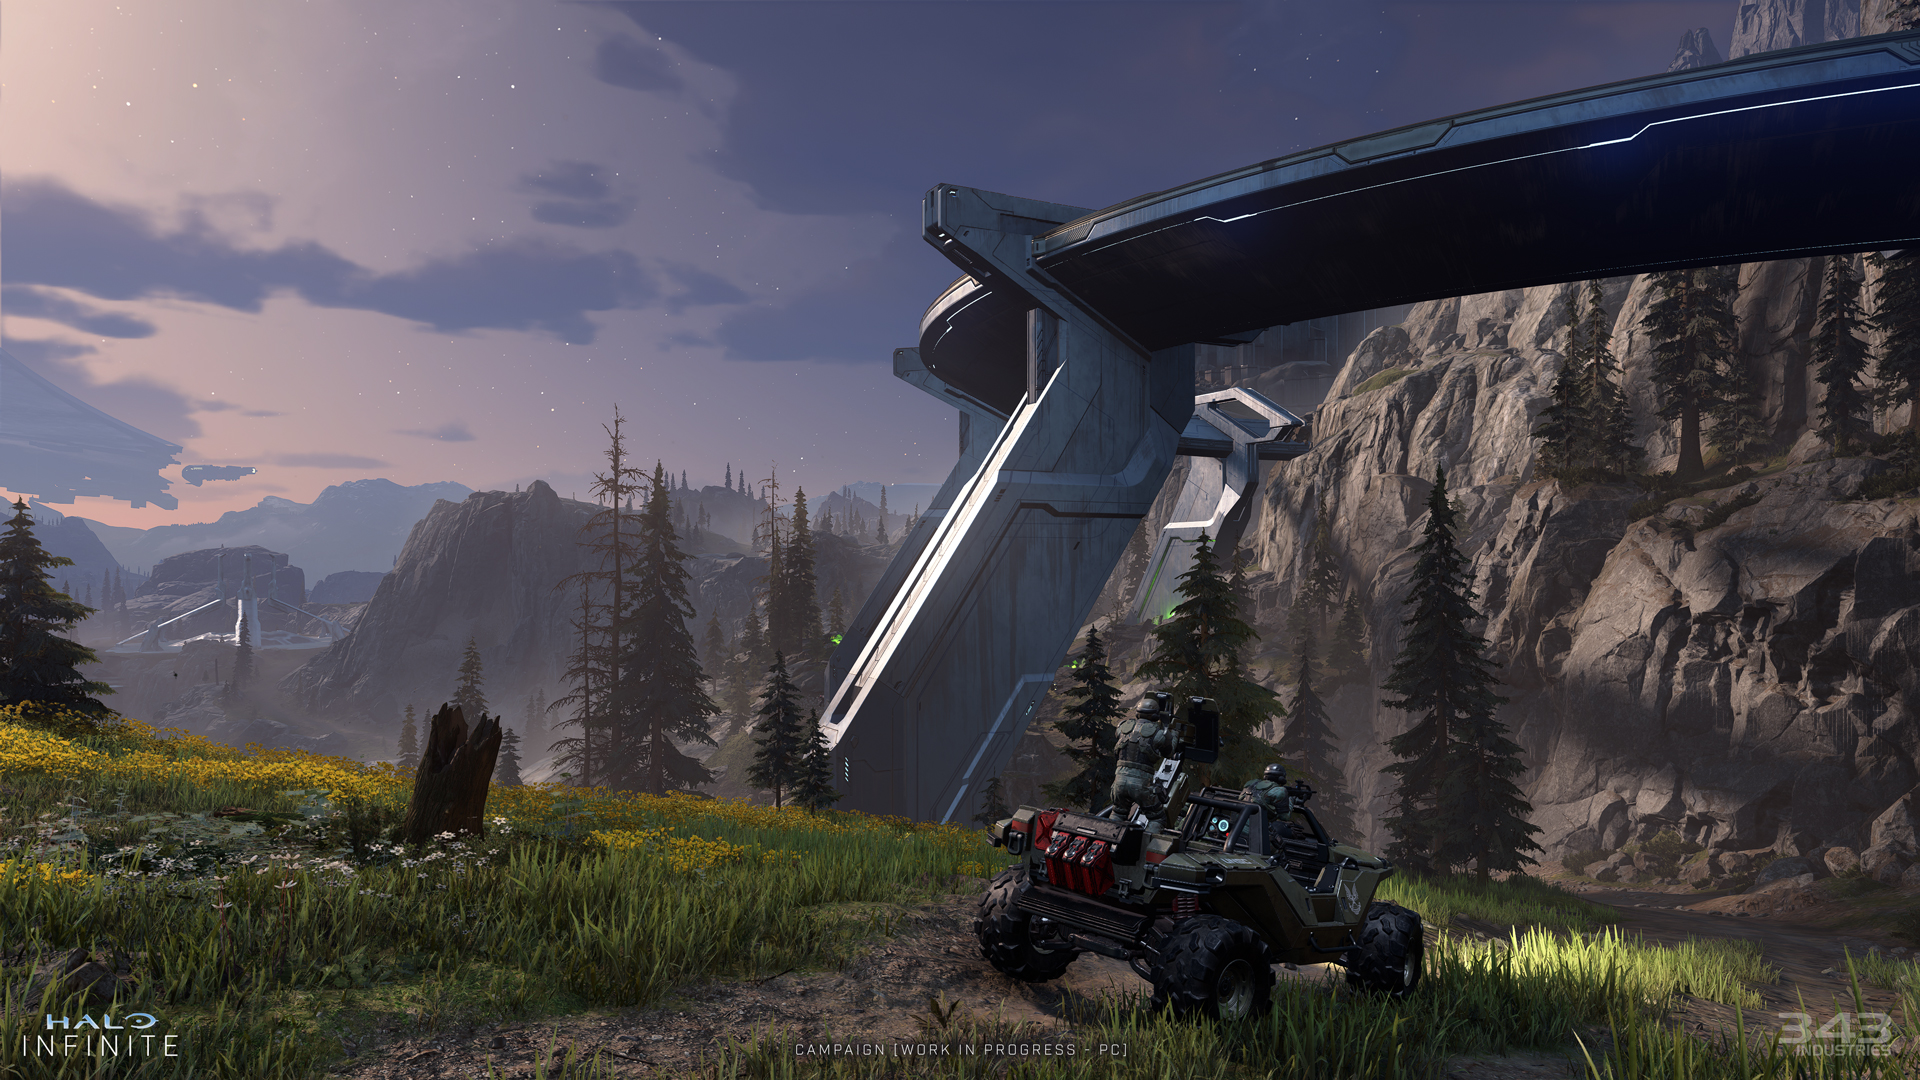 Halo Infinite descubrirá un mundo más abierto y lleno de aventuras